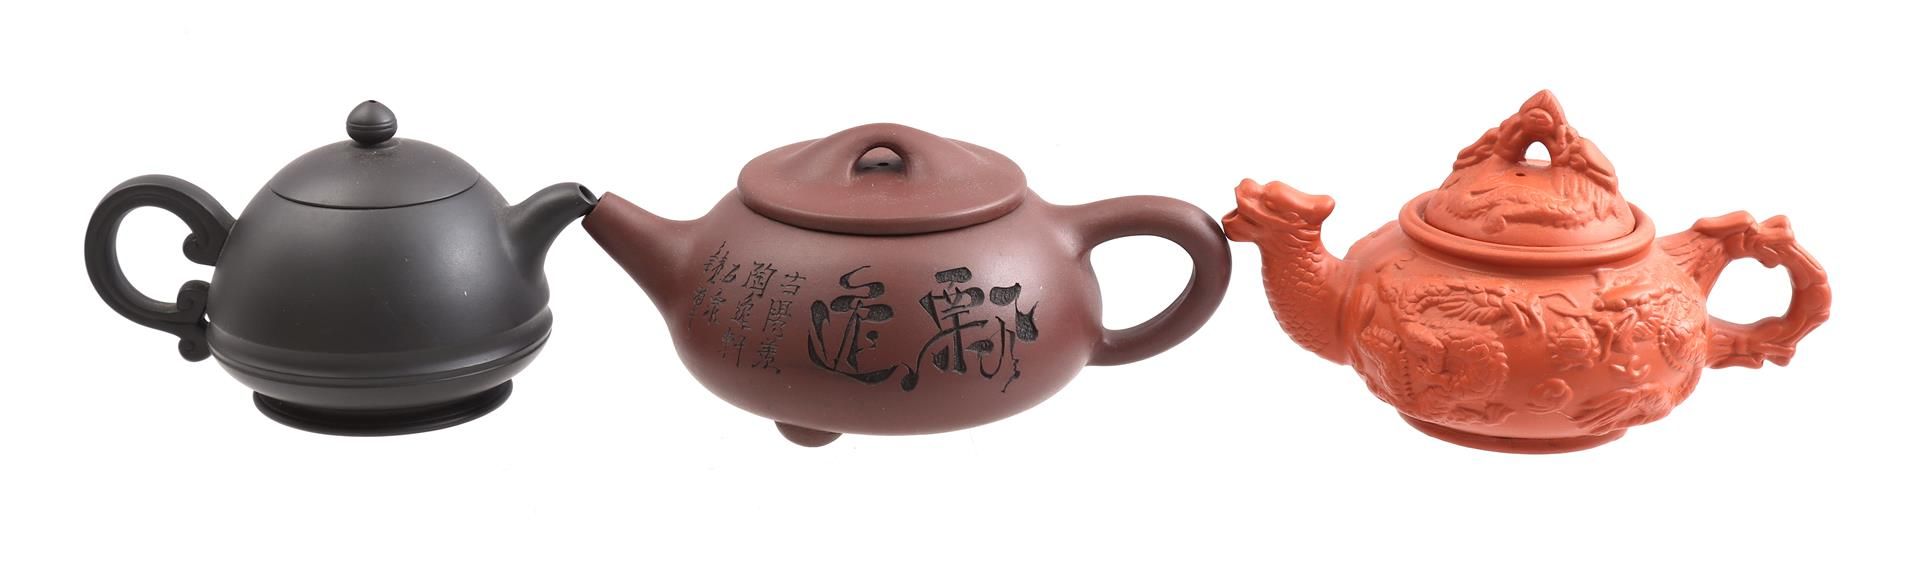 3 Yixing earthenware teapots, China 21th - Bild 2 aus 3